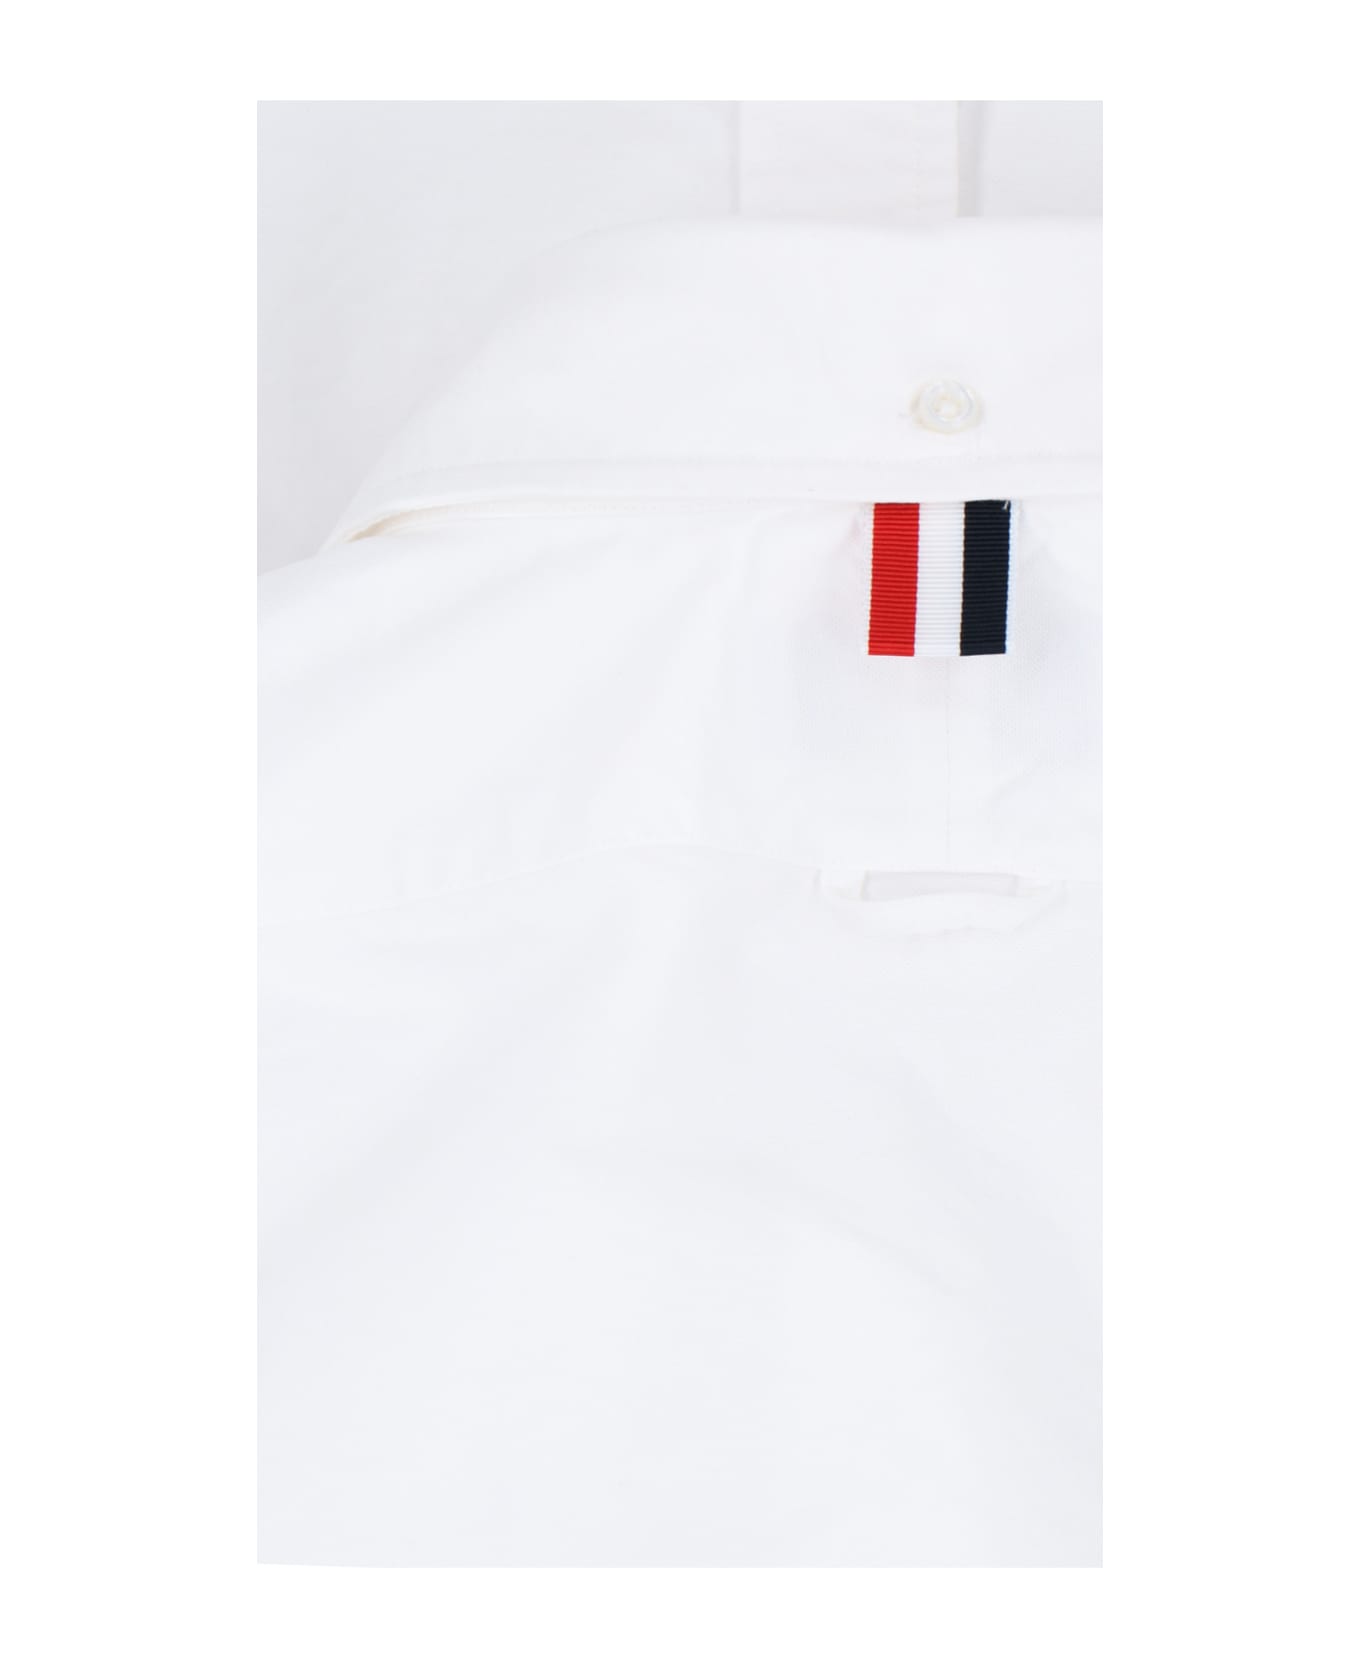 Thom Browne '4-bar' Shirt - WHITE